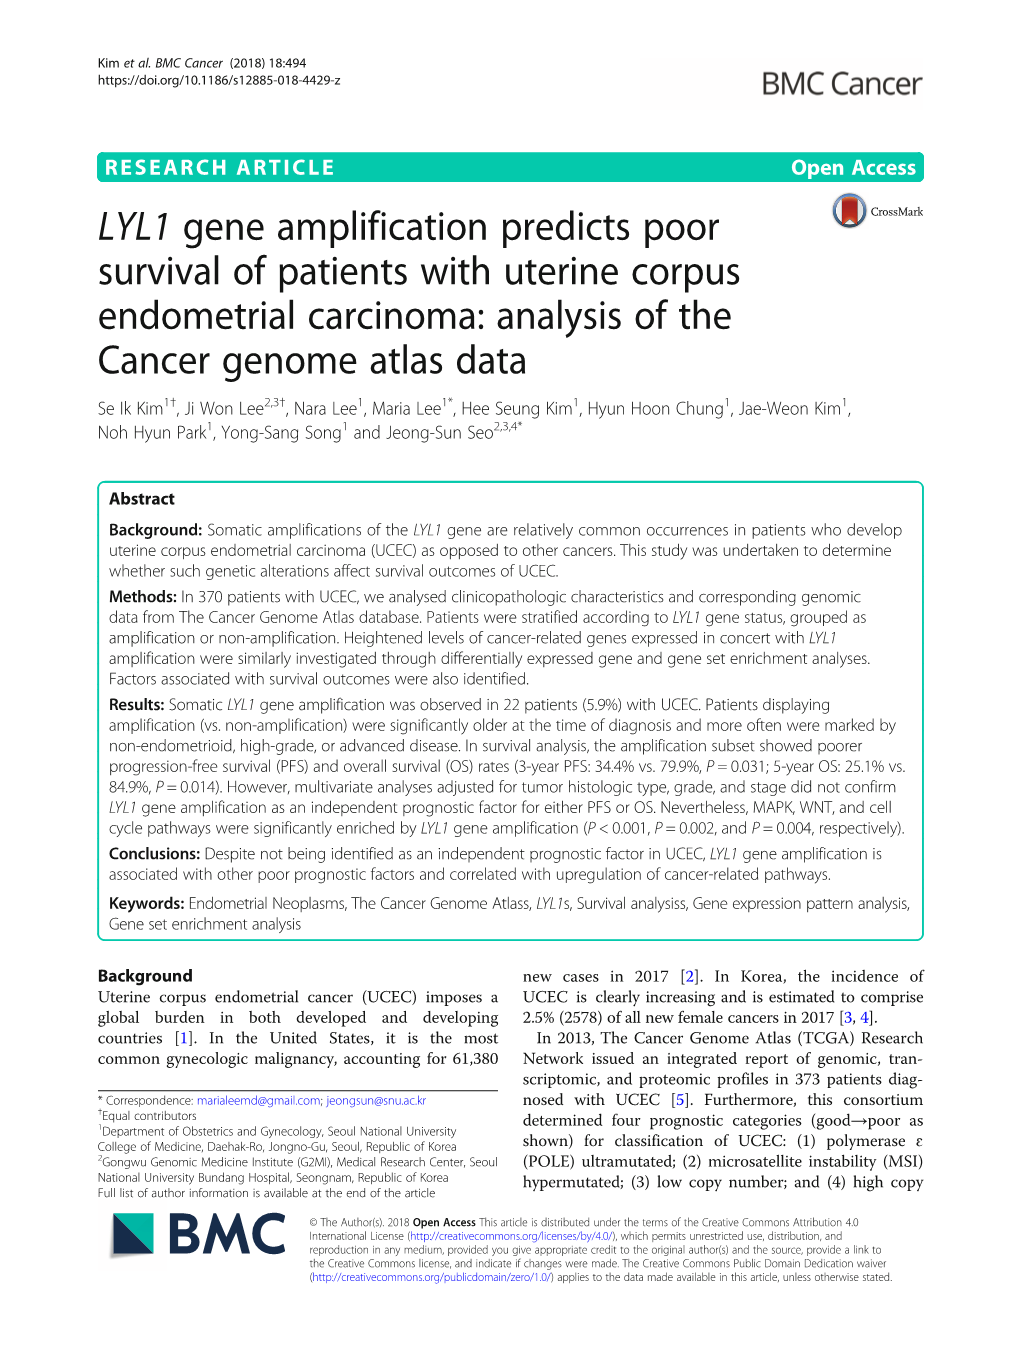 LYL1 Gene Amplification Predicts Poor Survival of Patients